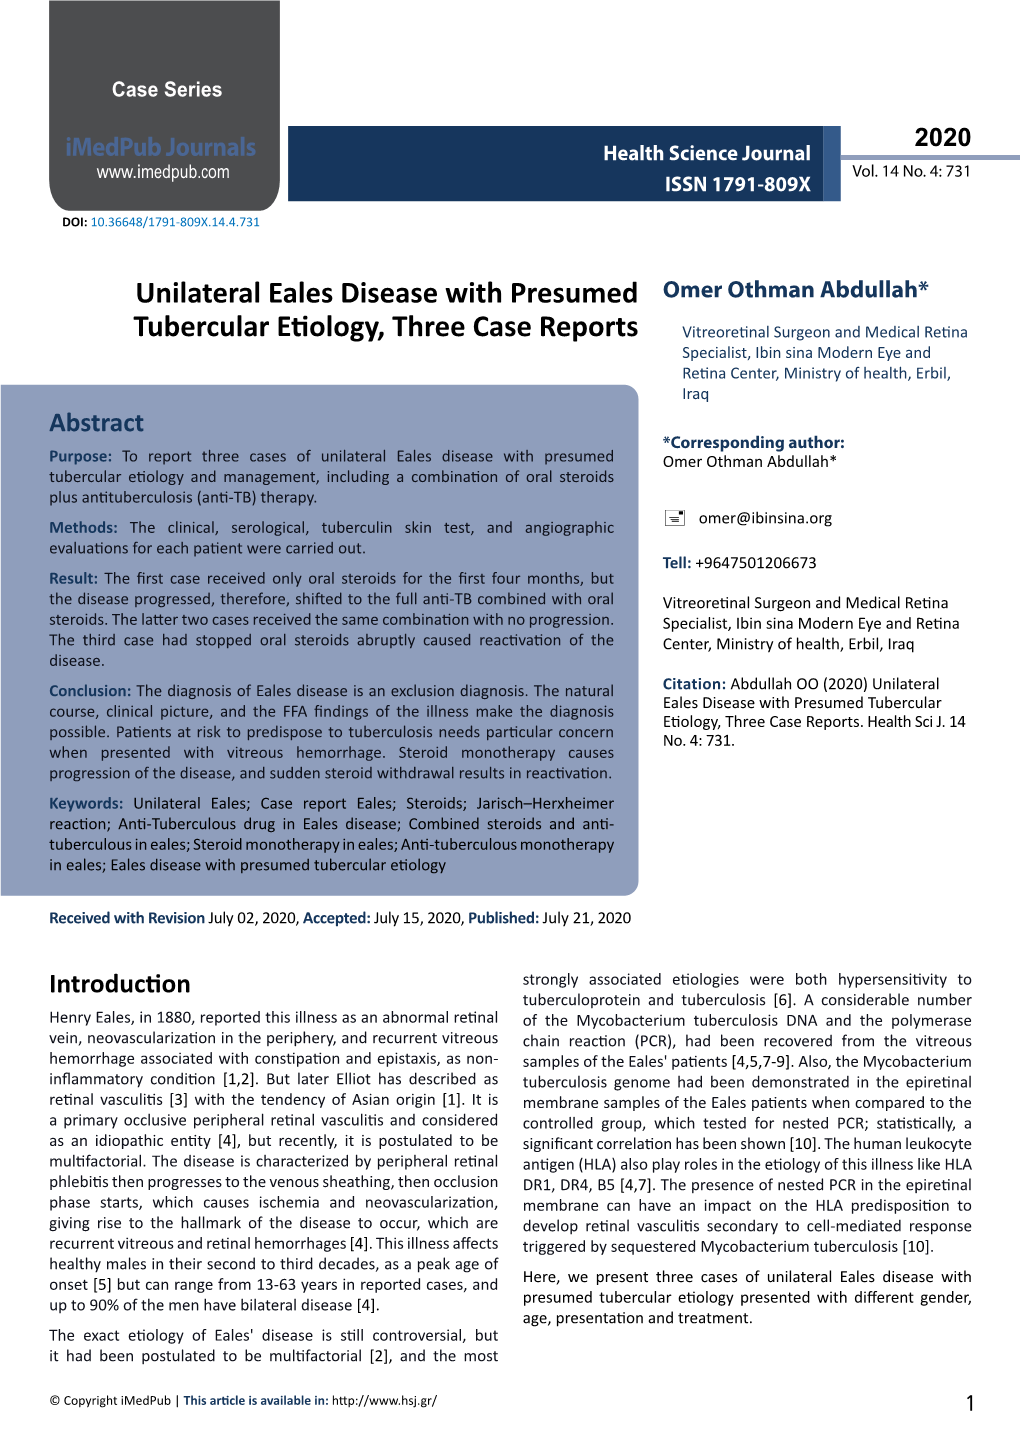 Unilateral Eales Disease with Presumed Tubercular Etiology